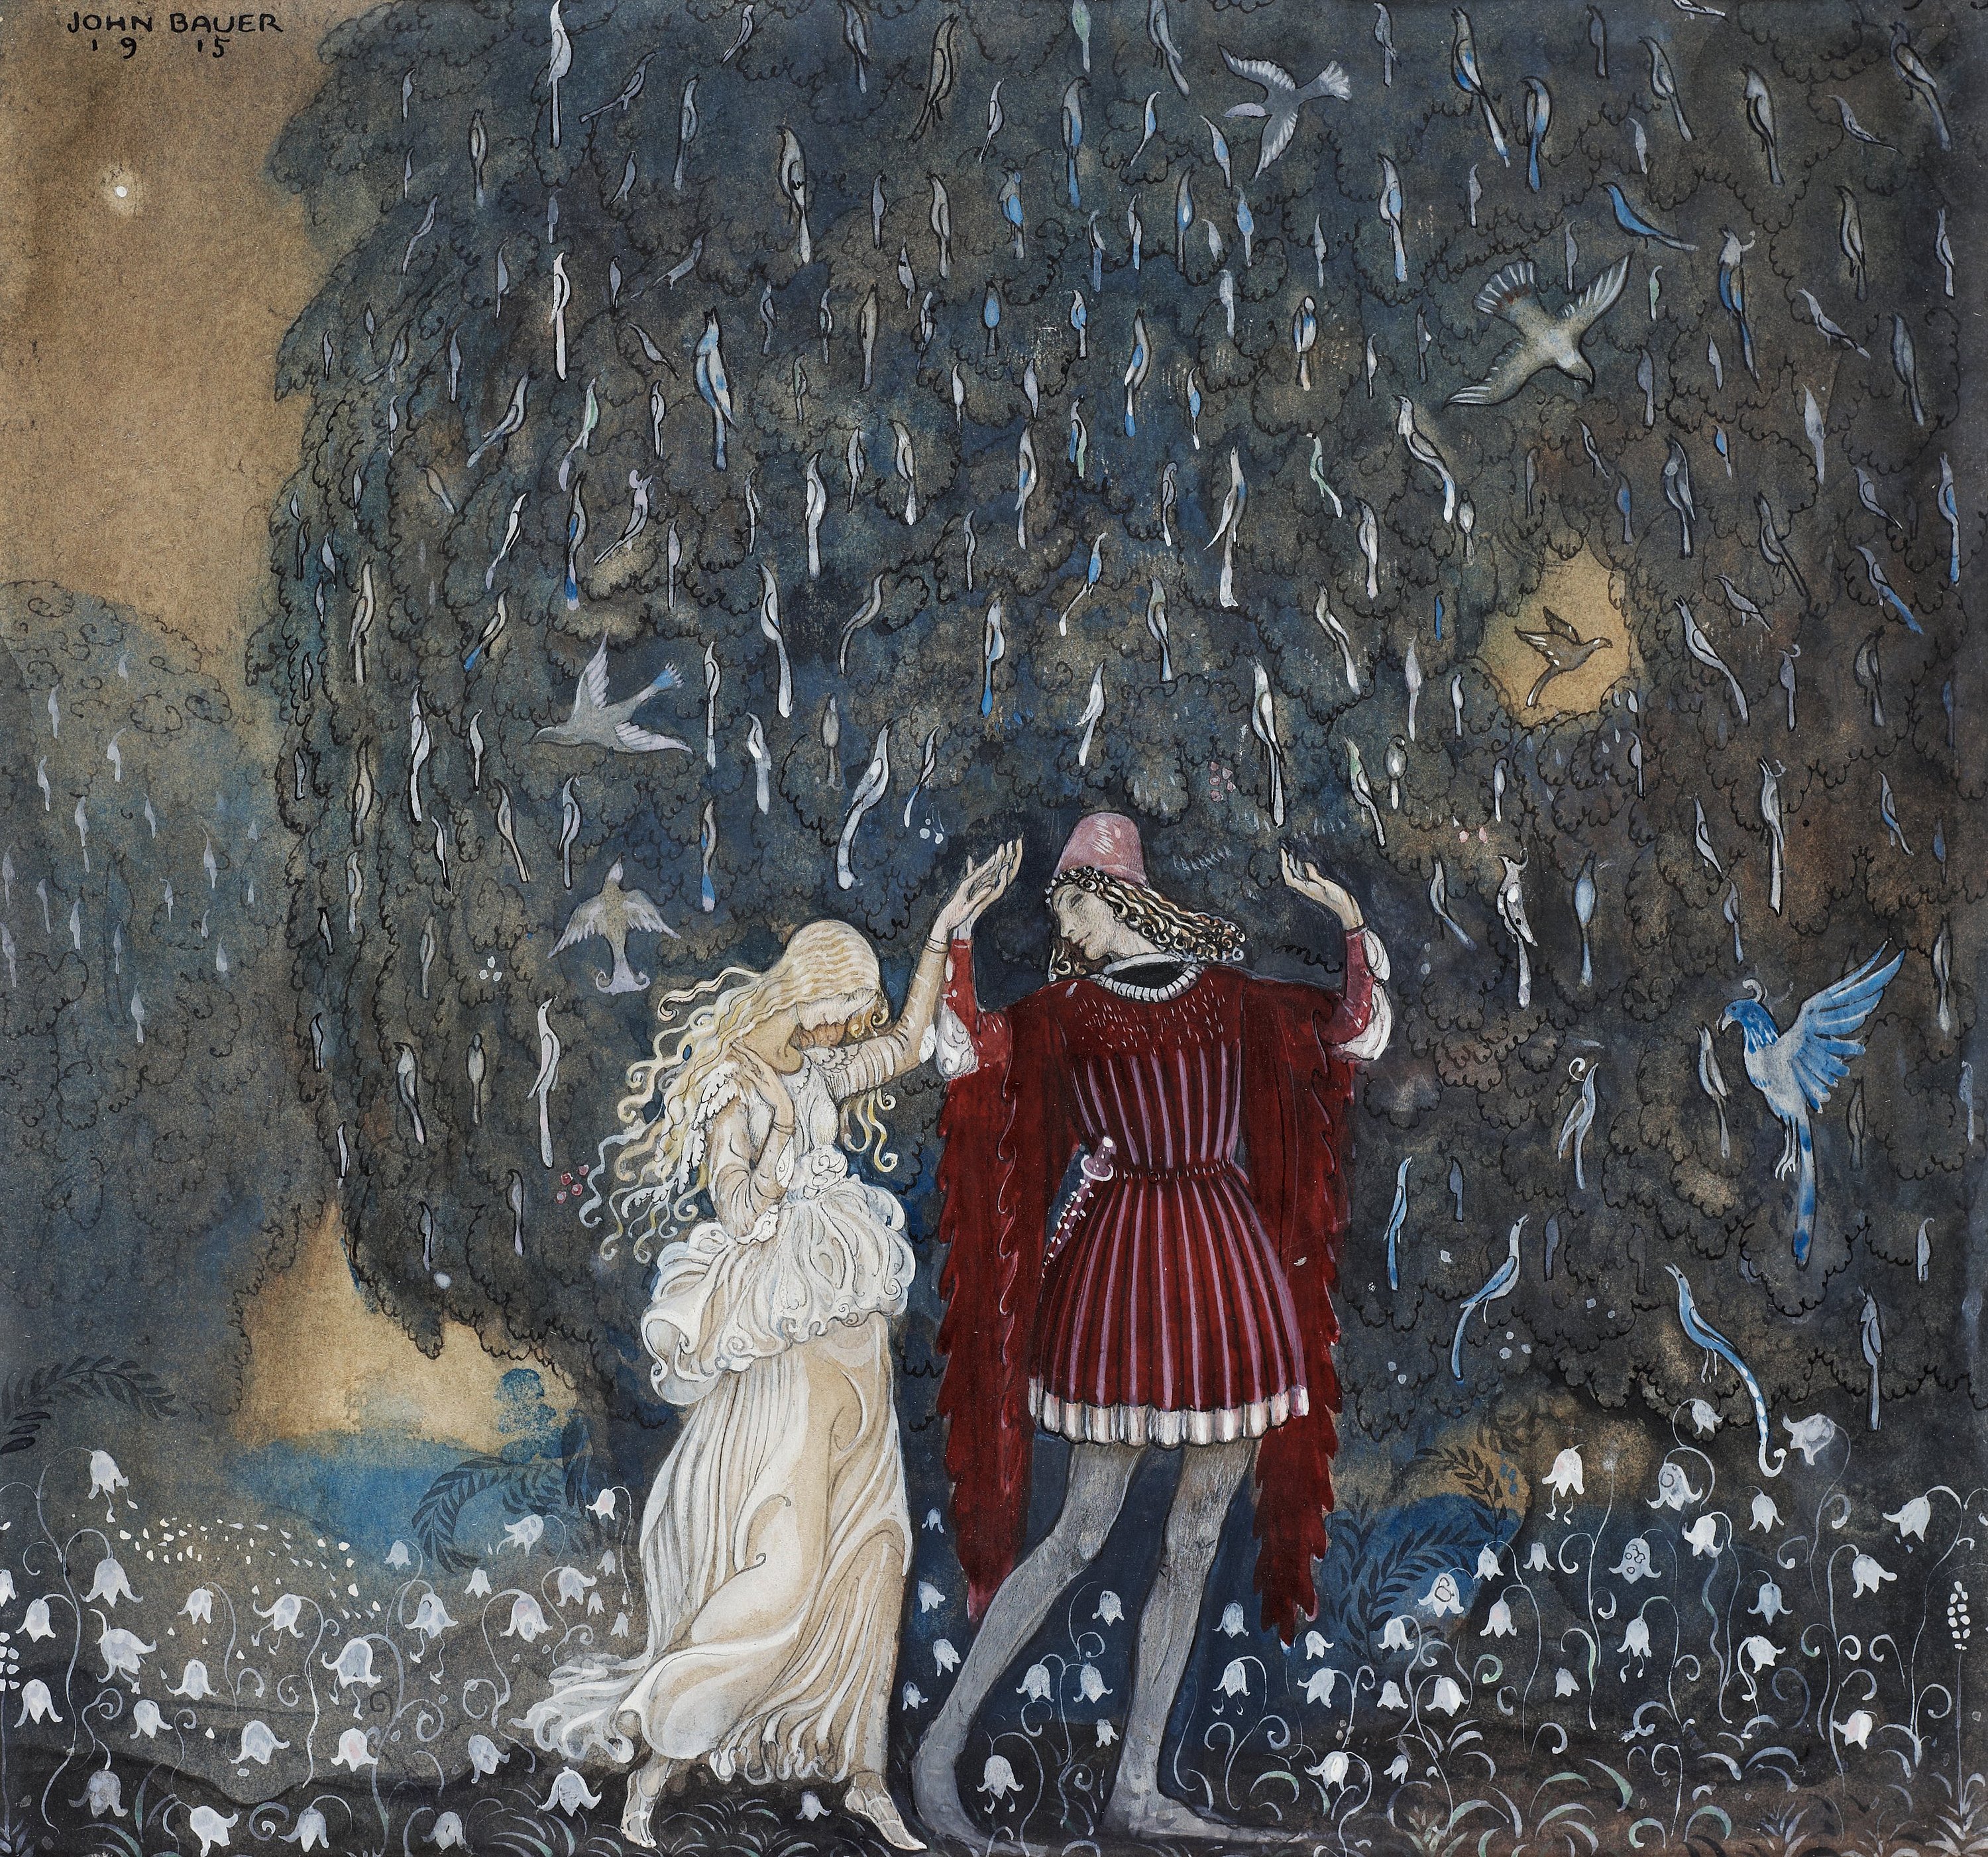 Lena och riddaren dansa (Lena dances with the knight) by John Bauer 1915